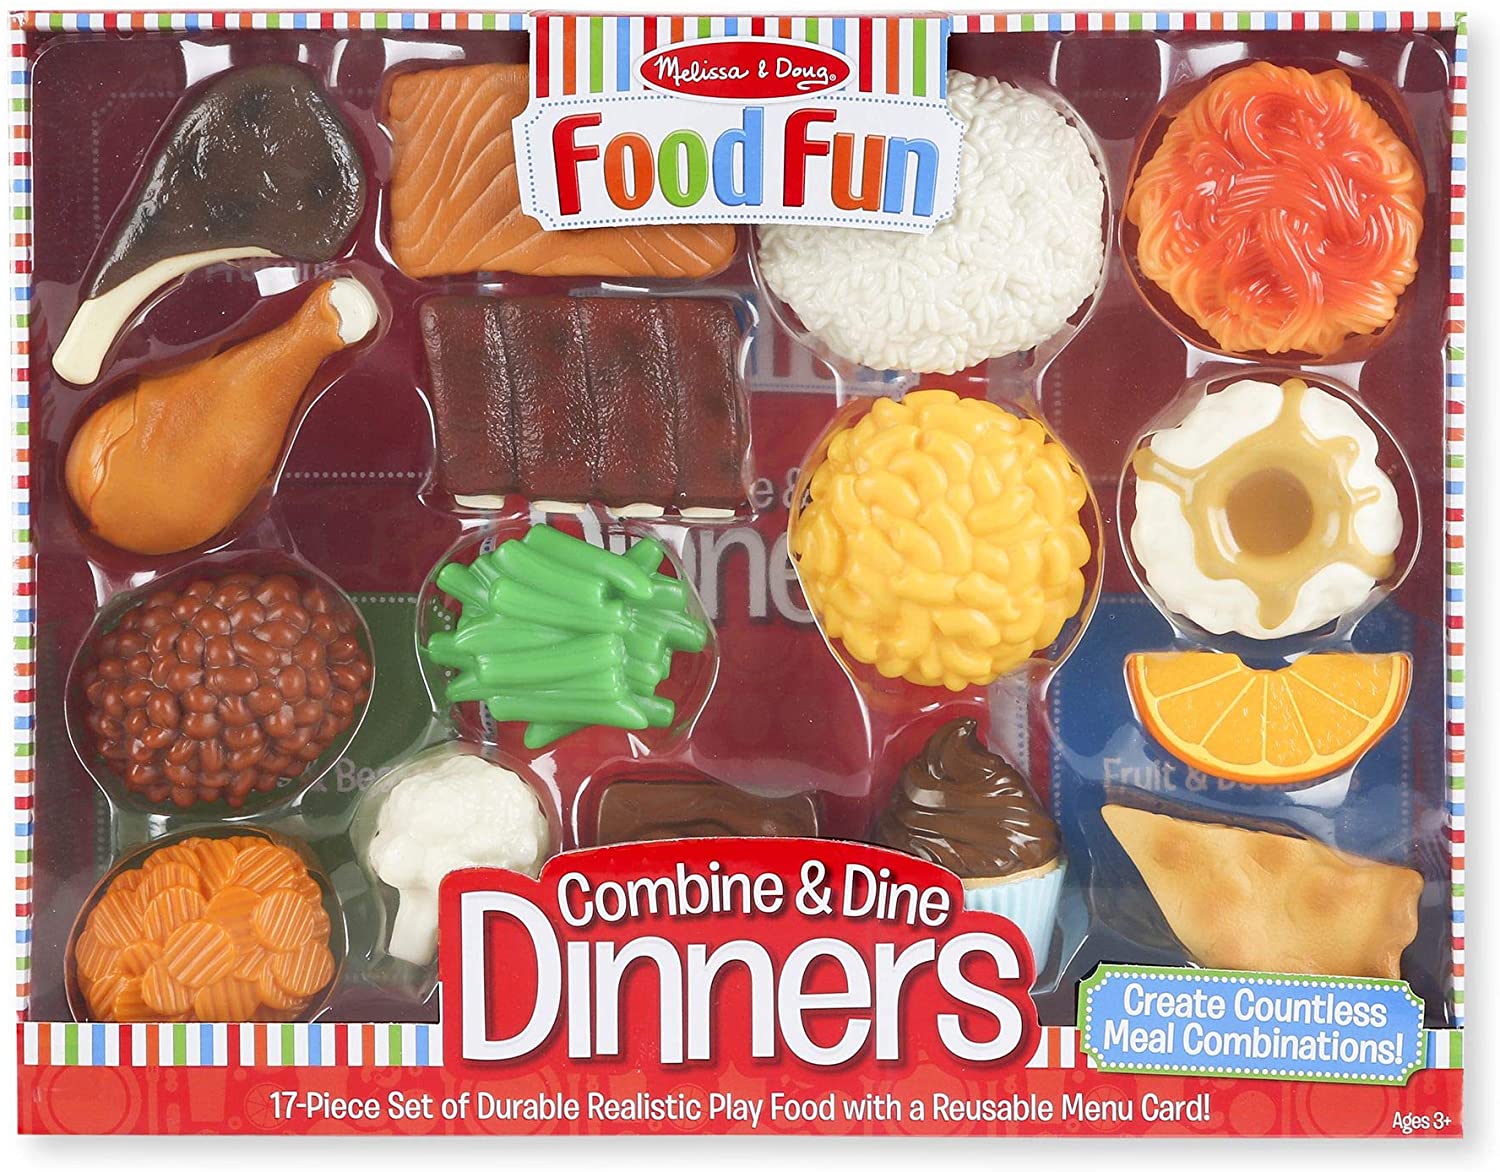 Food Fun Combine & Dine Dinners